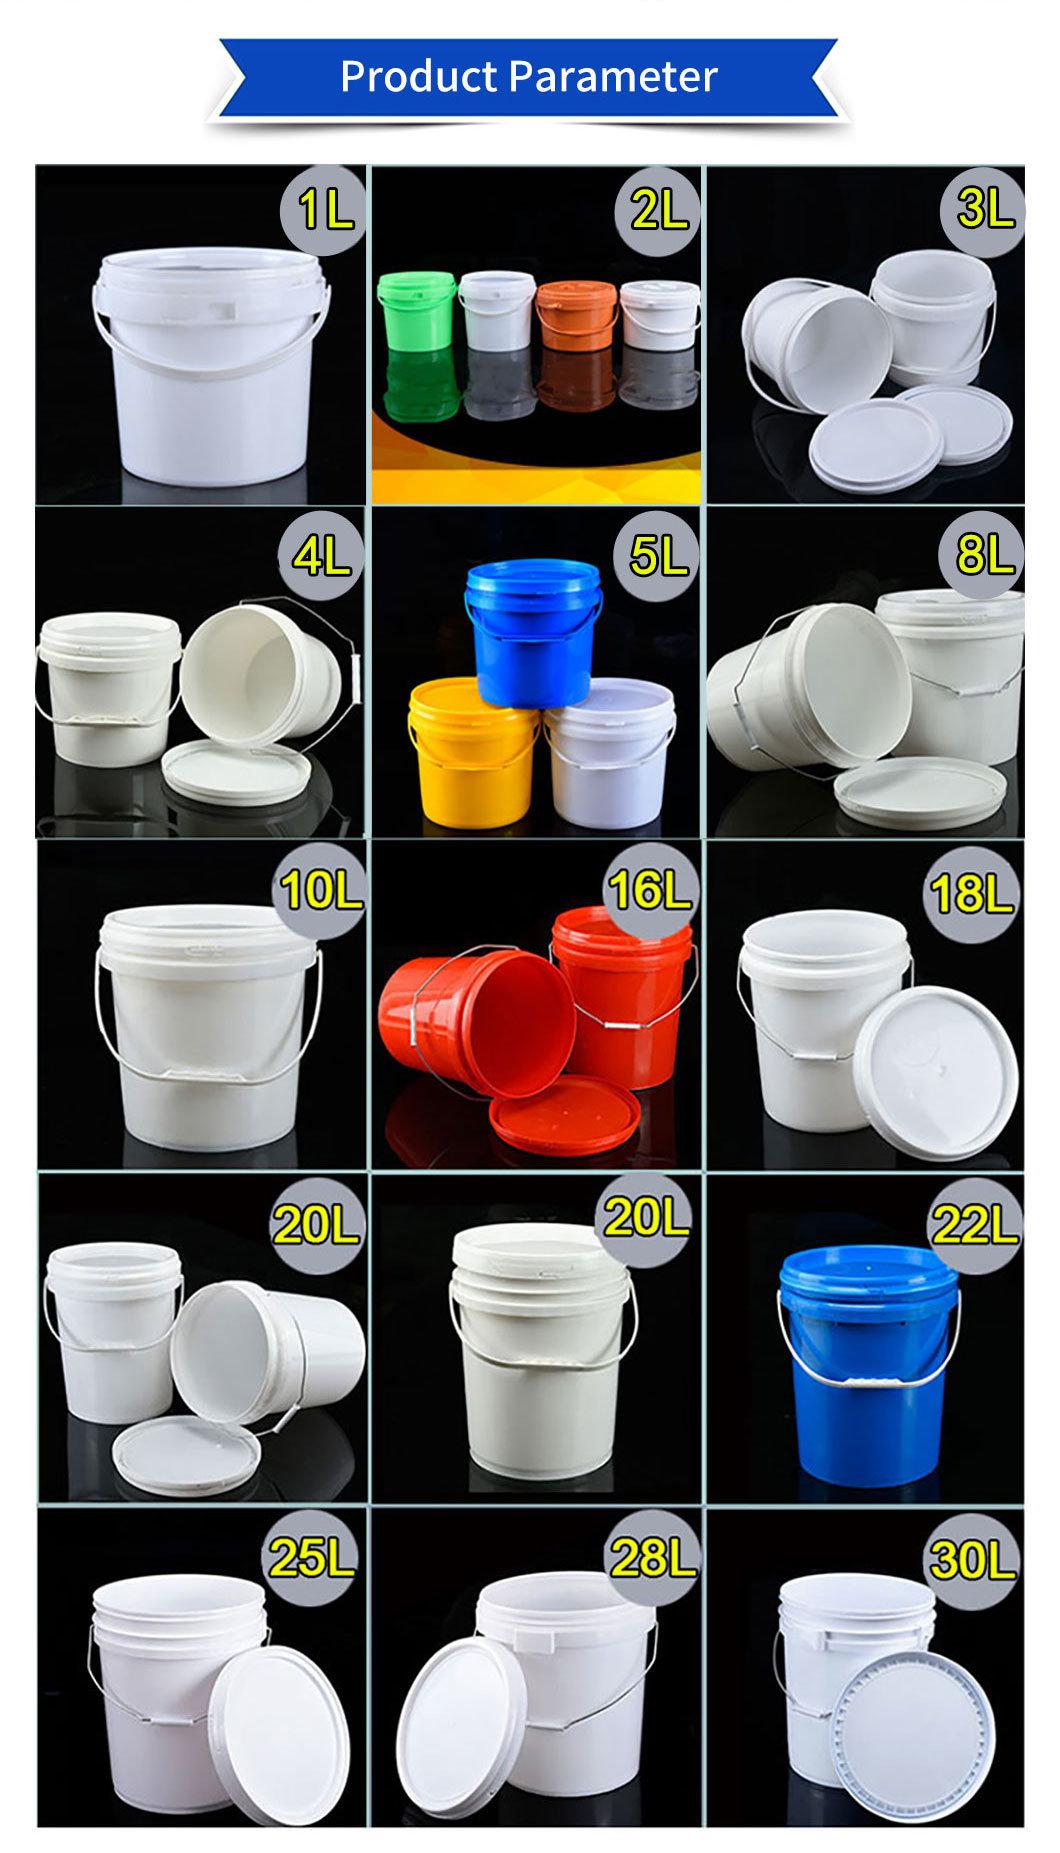 Factory Wholesale Plastic Pails 20L Clear Plastic Buckets with Lids